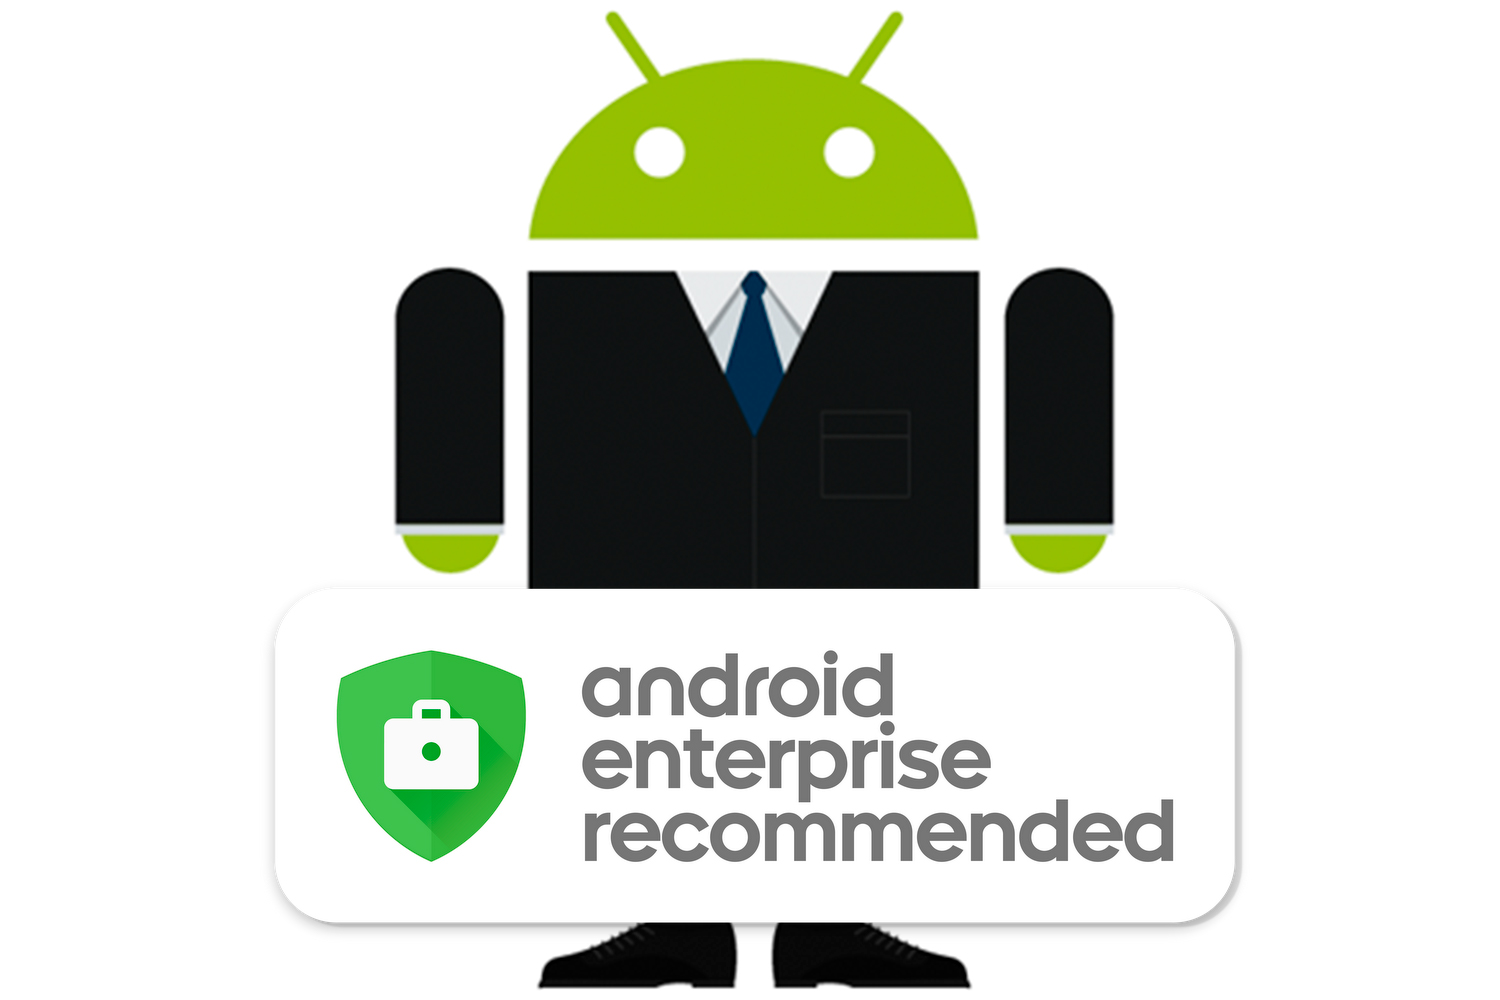 安全、值得信賴：一共有14部 Nokia 智能手機獲得谷歌 Android Enterprise 設備推薦；商務人士最佳選擇！ 2